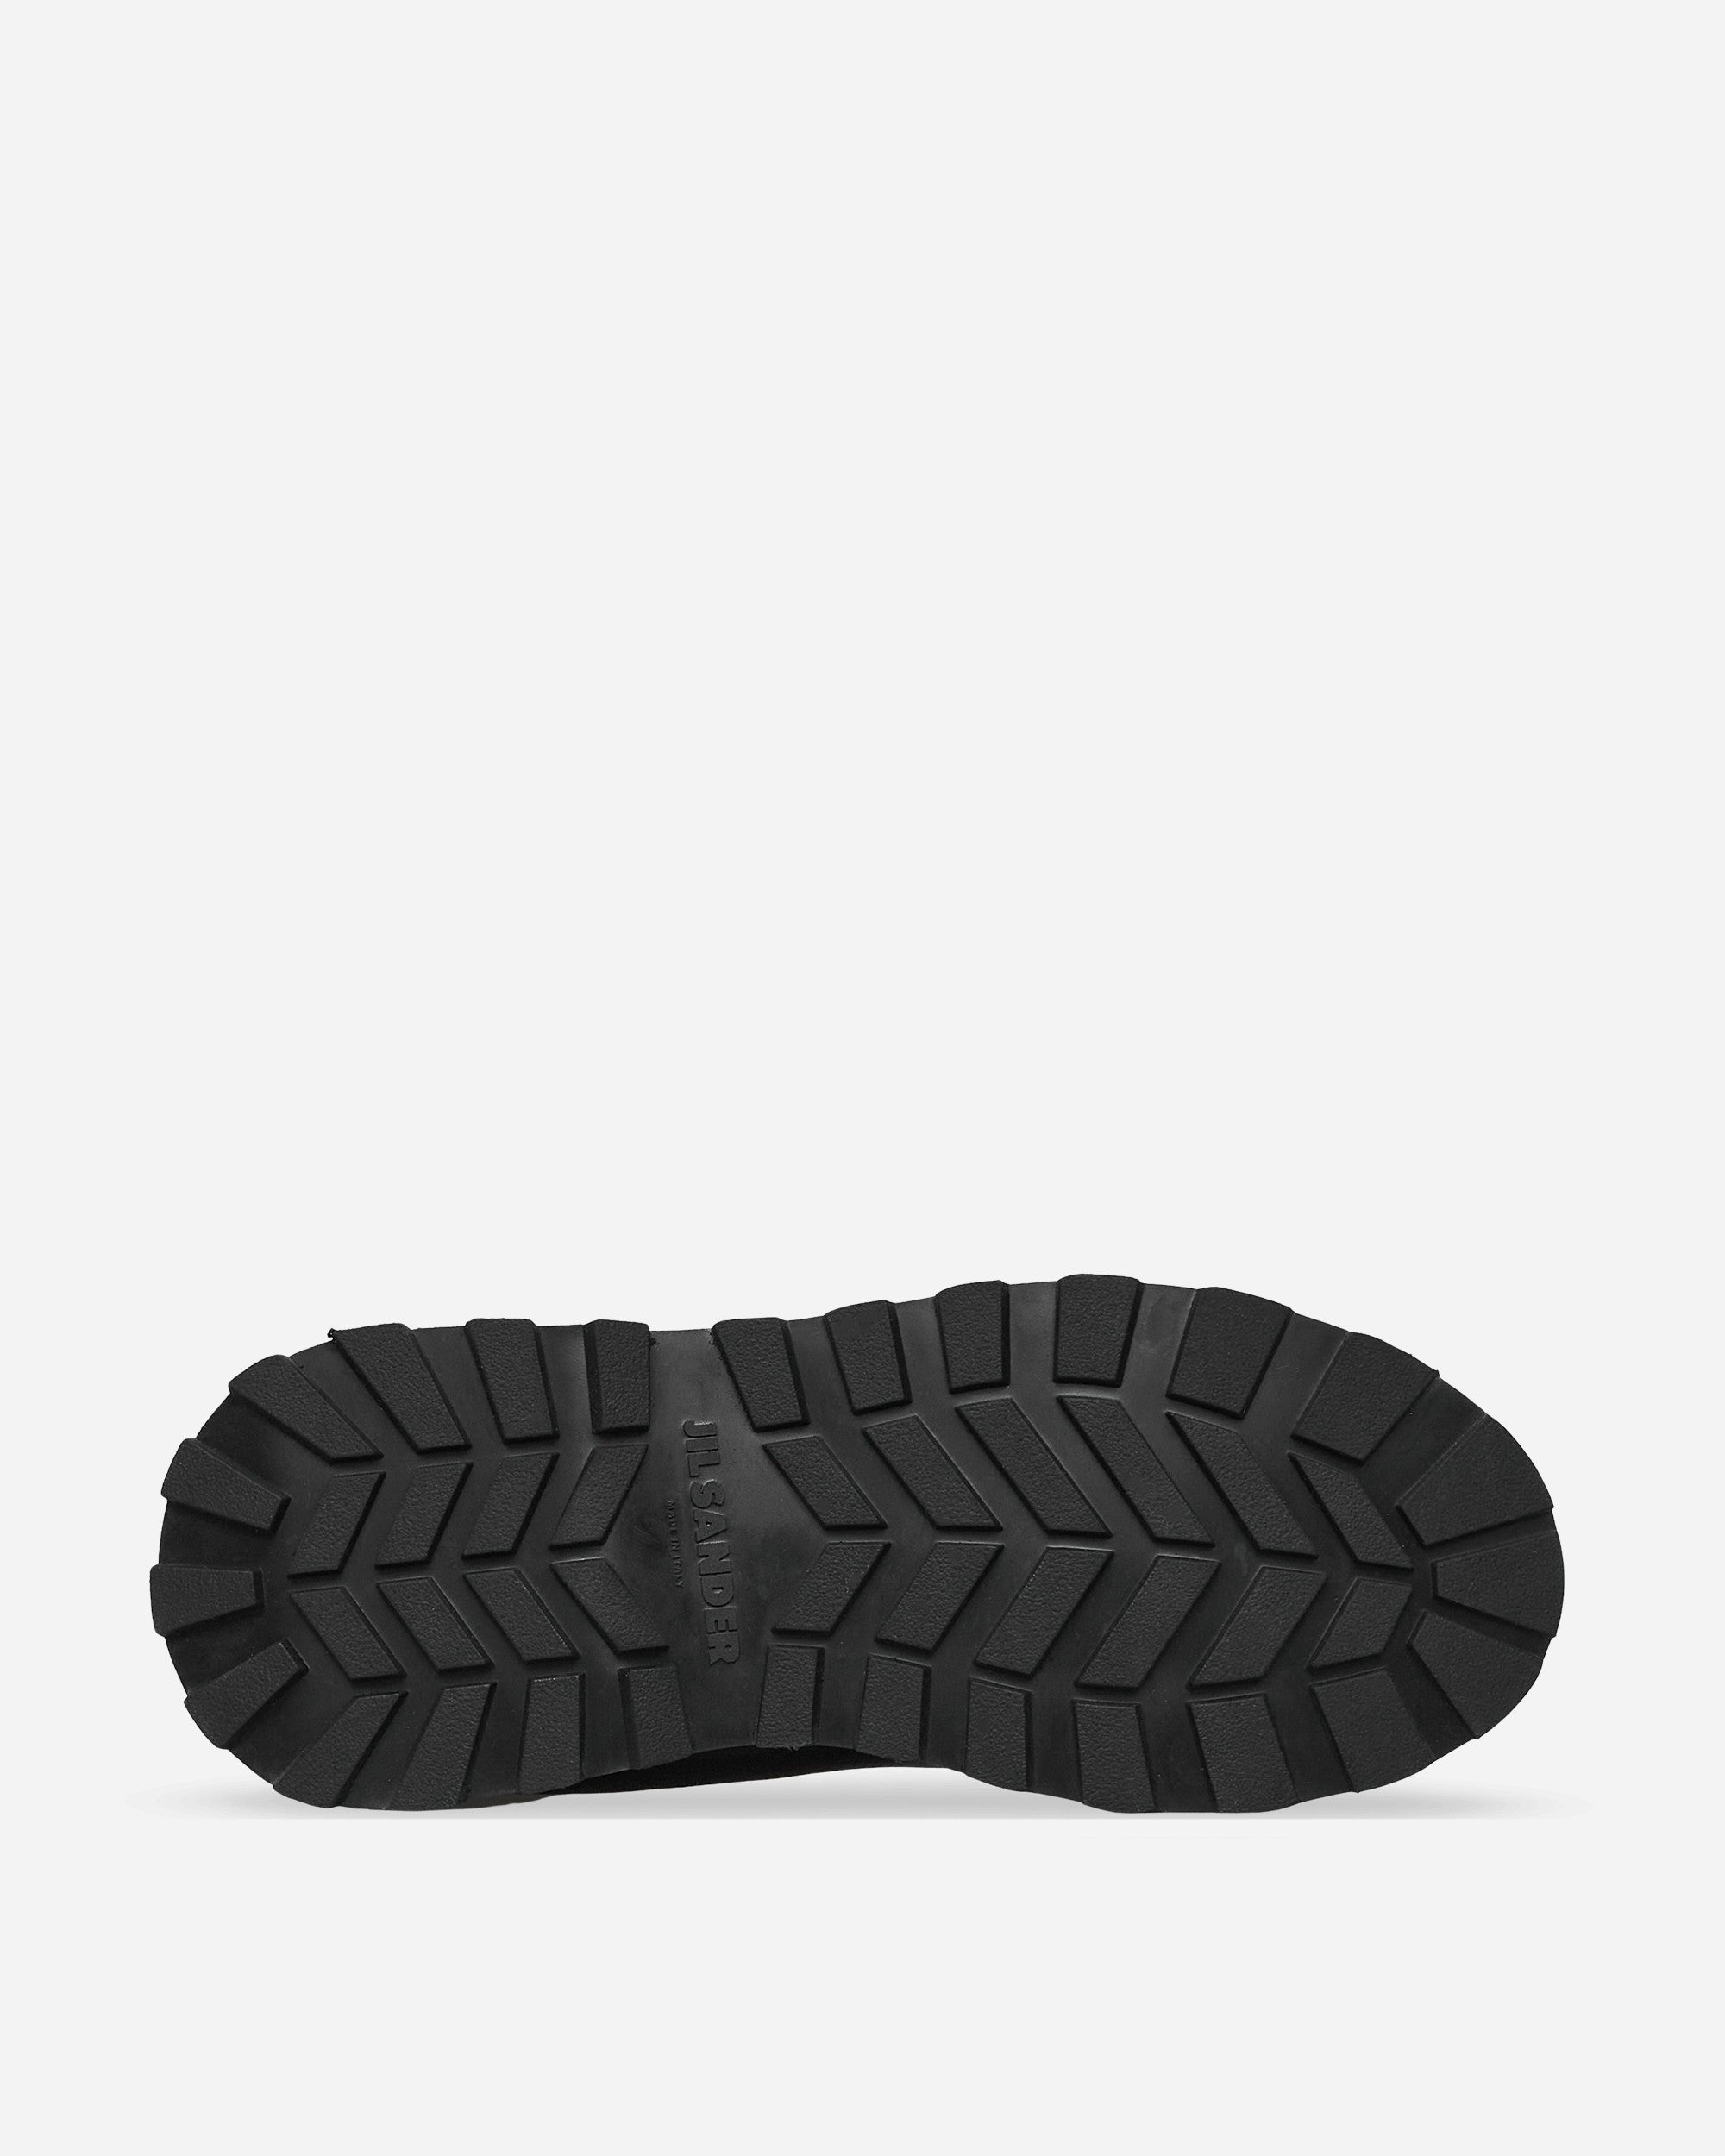 Jil Sander Shoes - Naim 999 Nero Black Sneakers Low JI38508A-15574 001